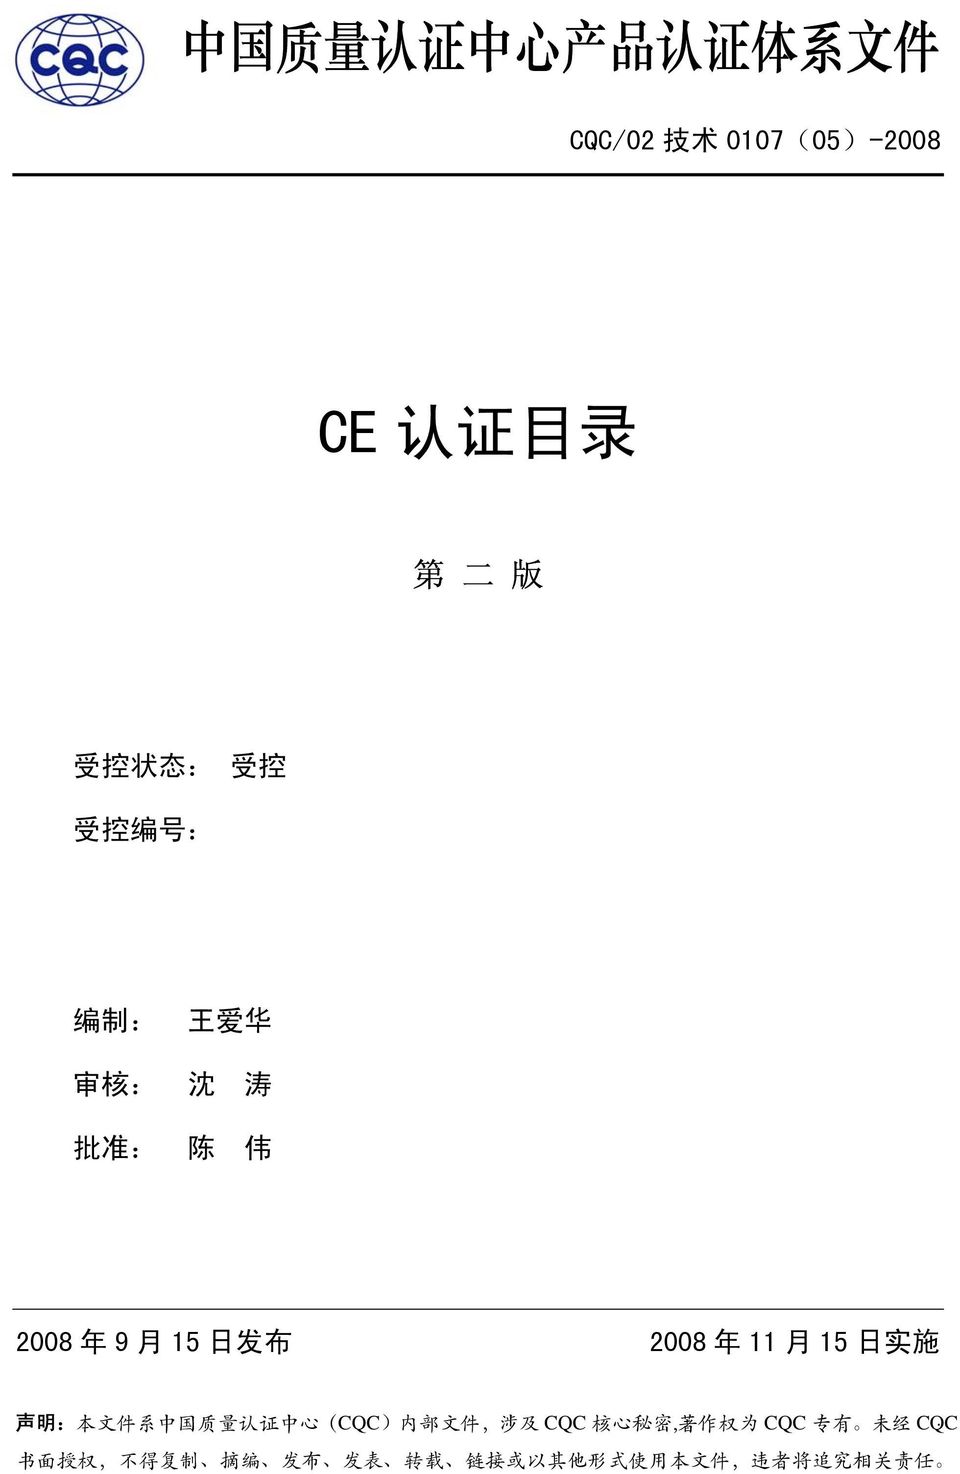 明 : 本 文 件 系 中 国 质 量 认 证 中 心 (CQC) 内 部 文 件, 涉 及 CQC 核 心 秘 密, 著 作 权 为 CQC 专 有 未 经